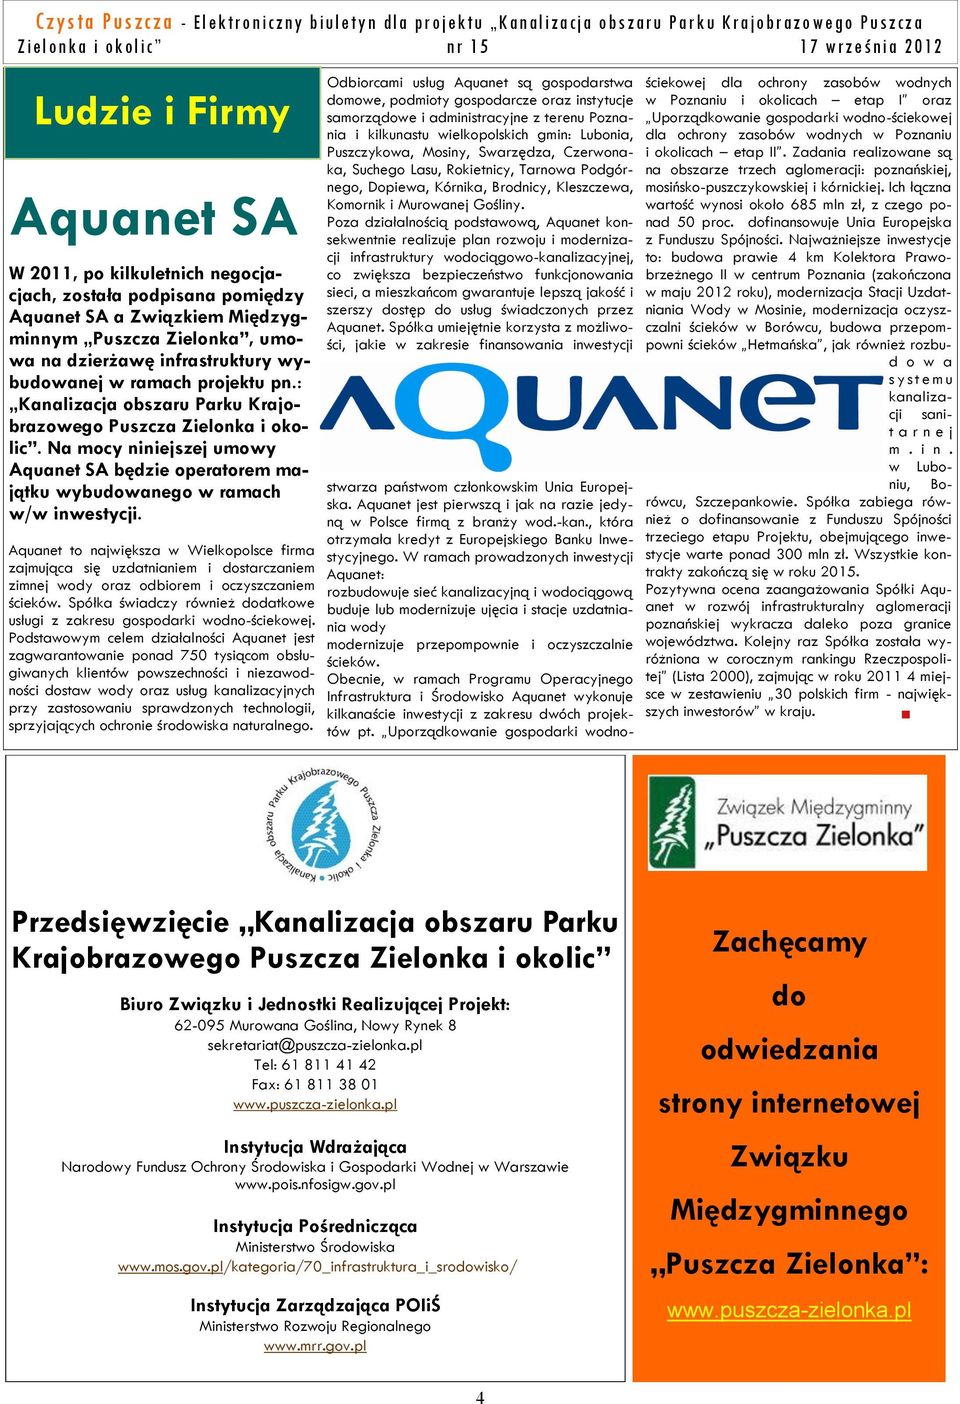 Aquanet to największa w Wielkopolsce firma zajmująca się uzdatnianiem i dostarczaniem zimnej wody oraz odbiorem i oczyszczaniem ścieków.